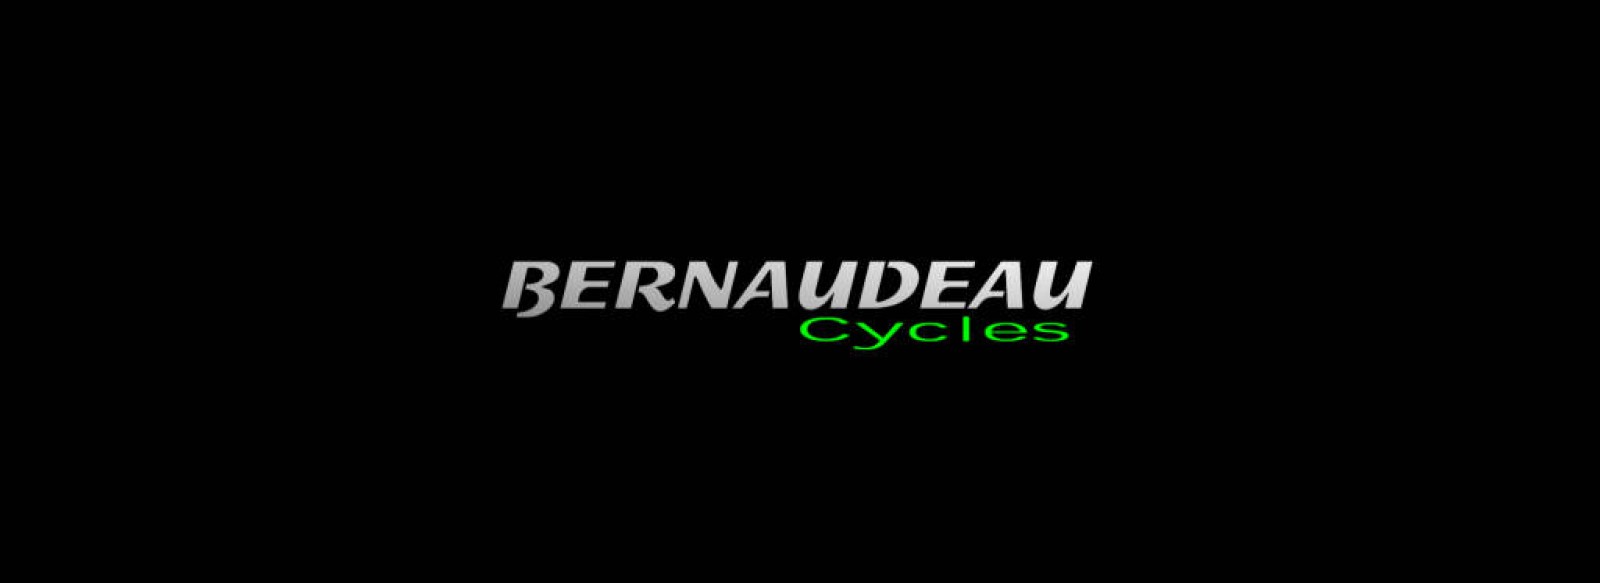 BERNAUDEAU CYCLES